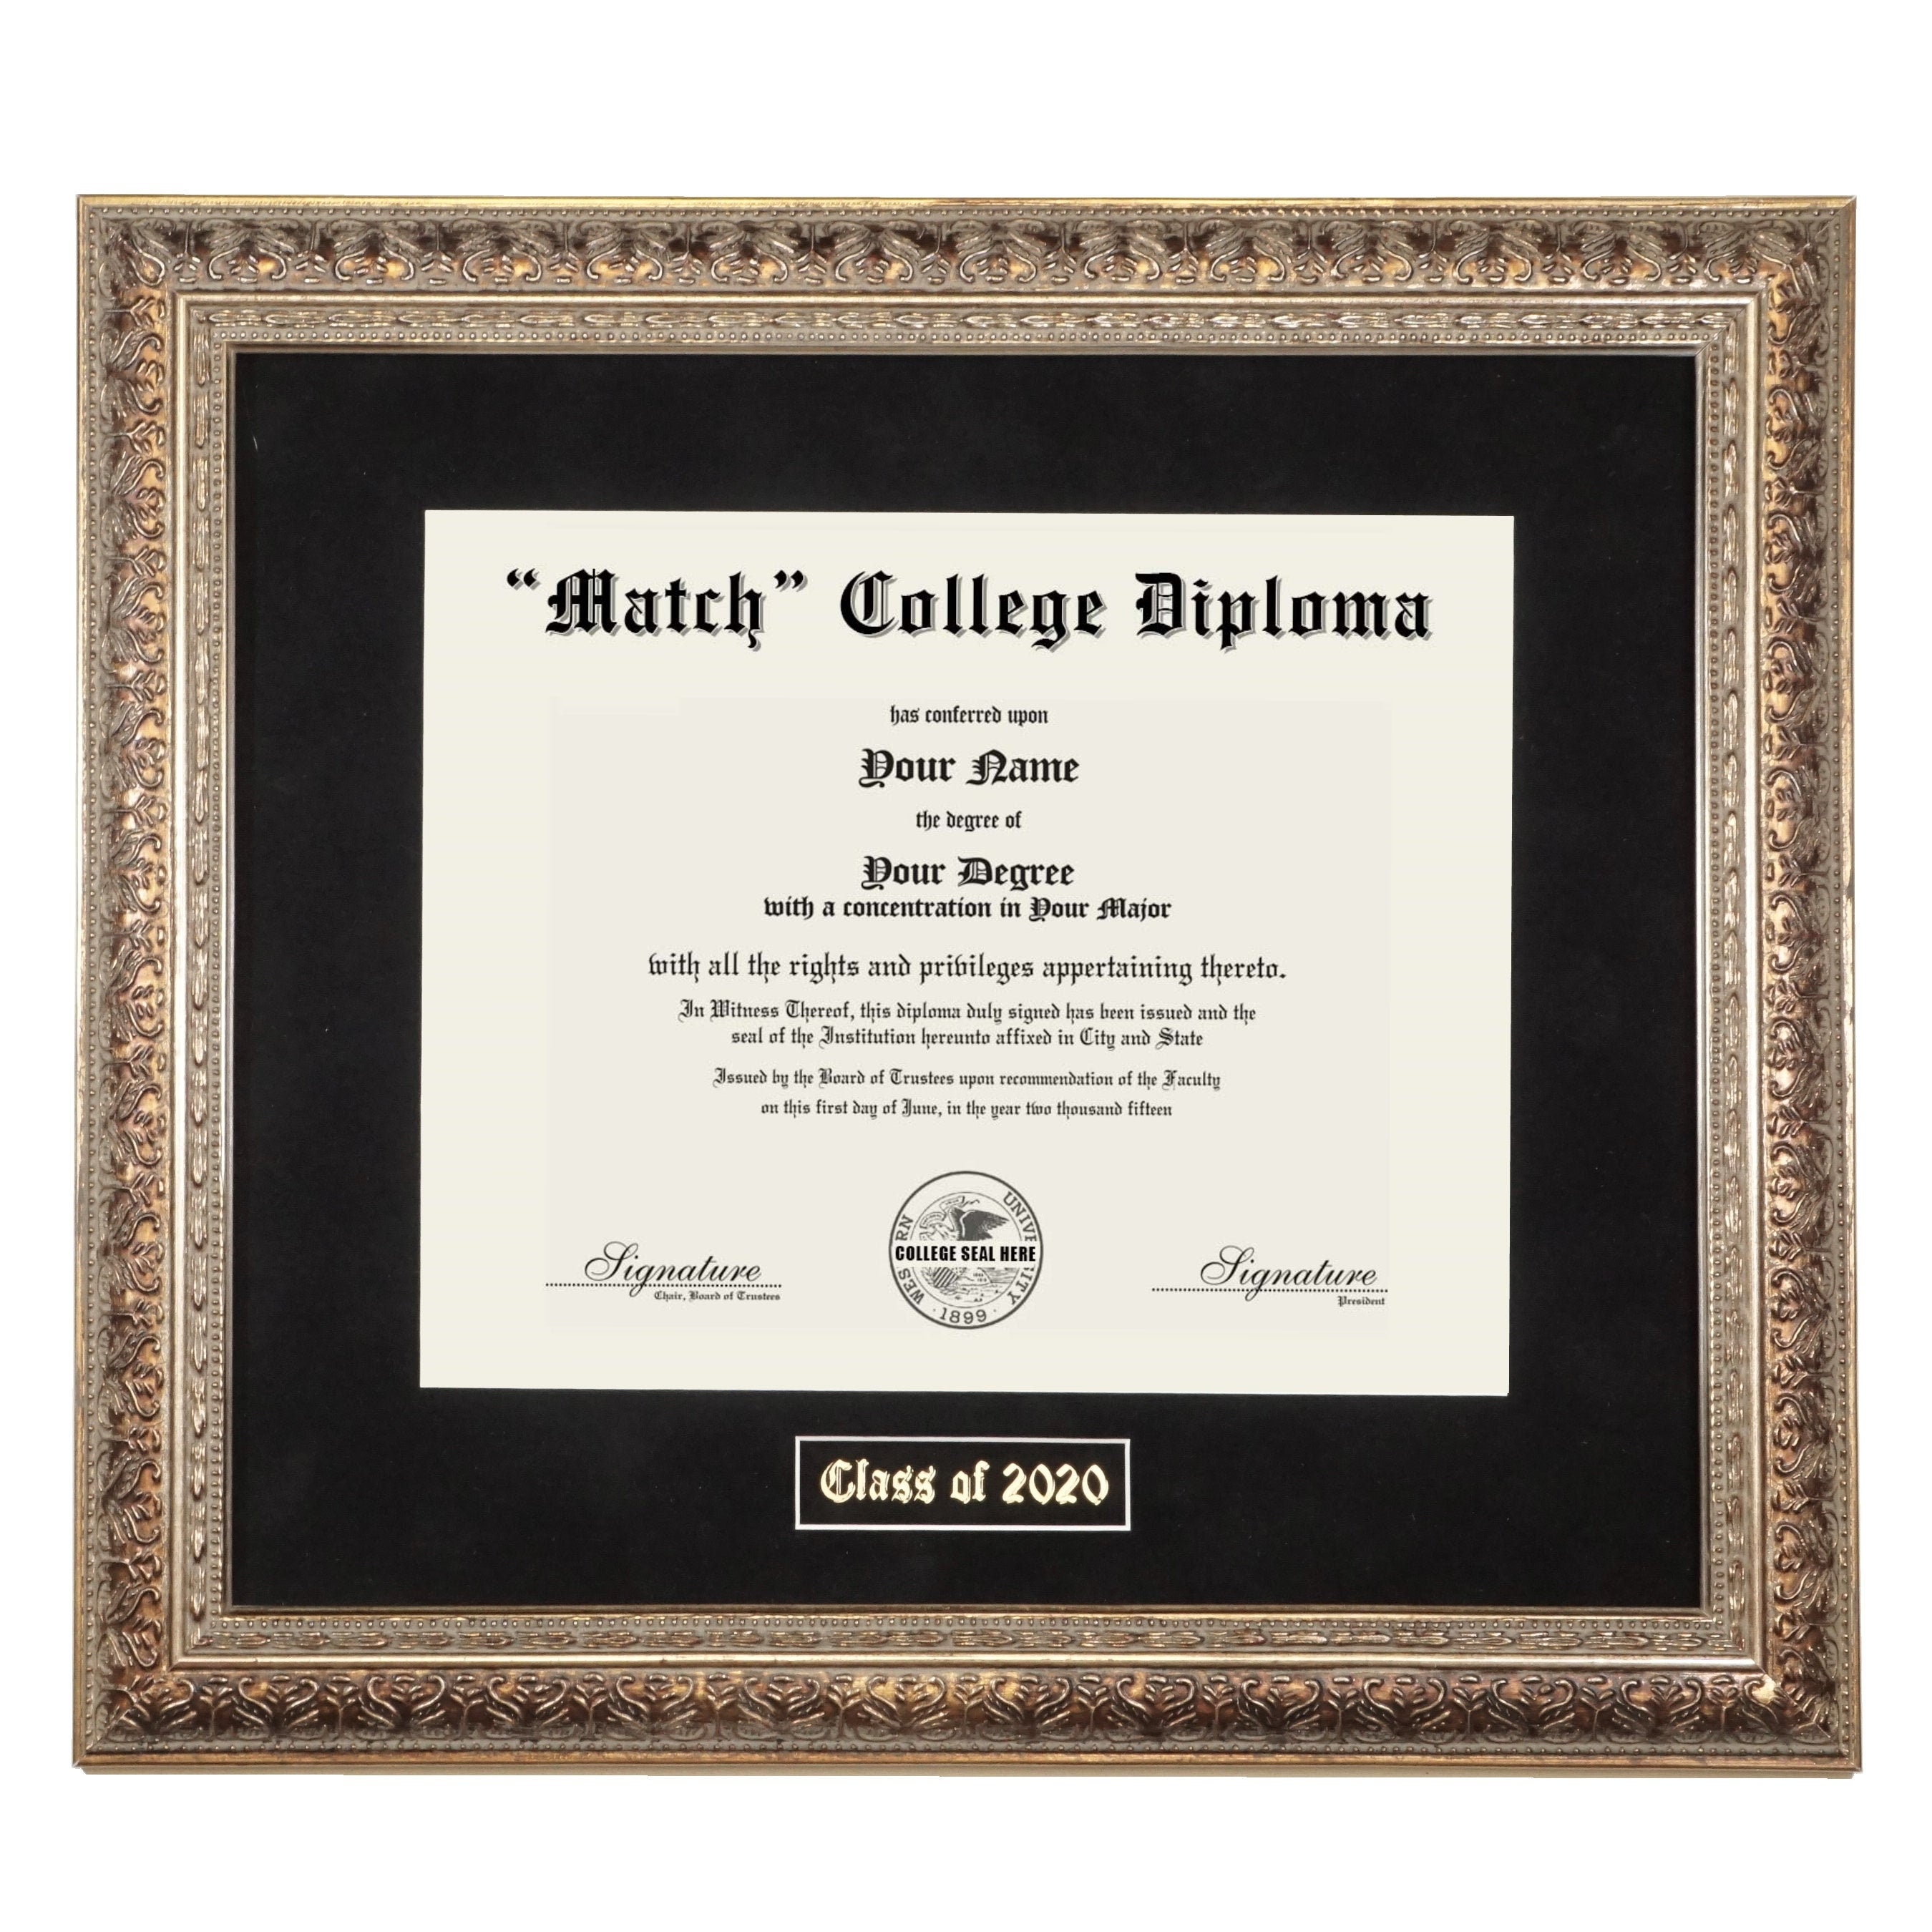 Marcos para diploma de sombra de 11 x 14 pulgadas, color blanco crema, se  adapta a certificados de 8.5 x 11 pulgadas o títulos universitarios con